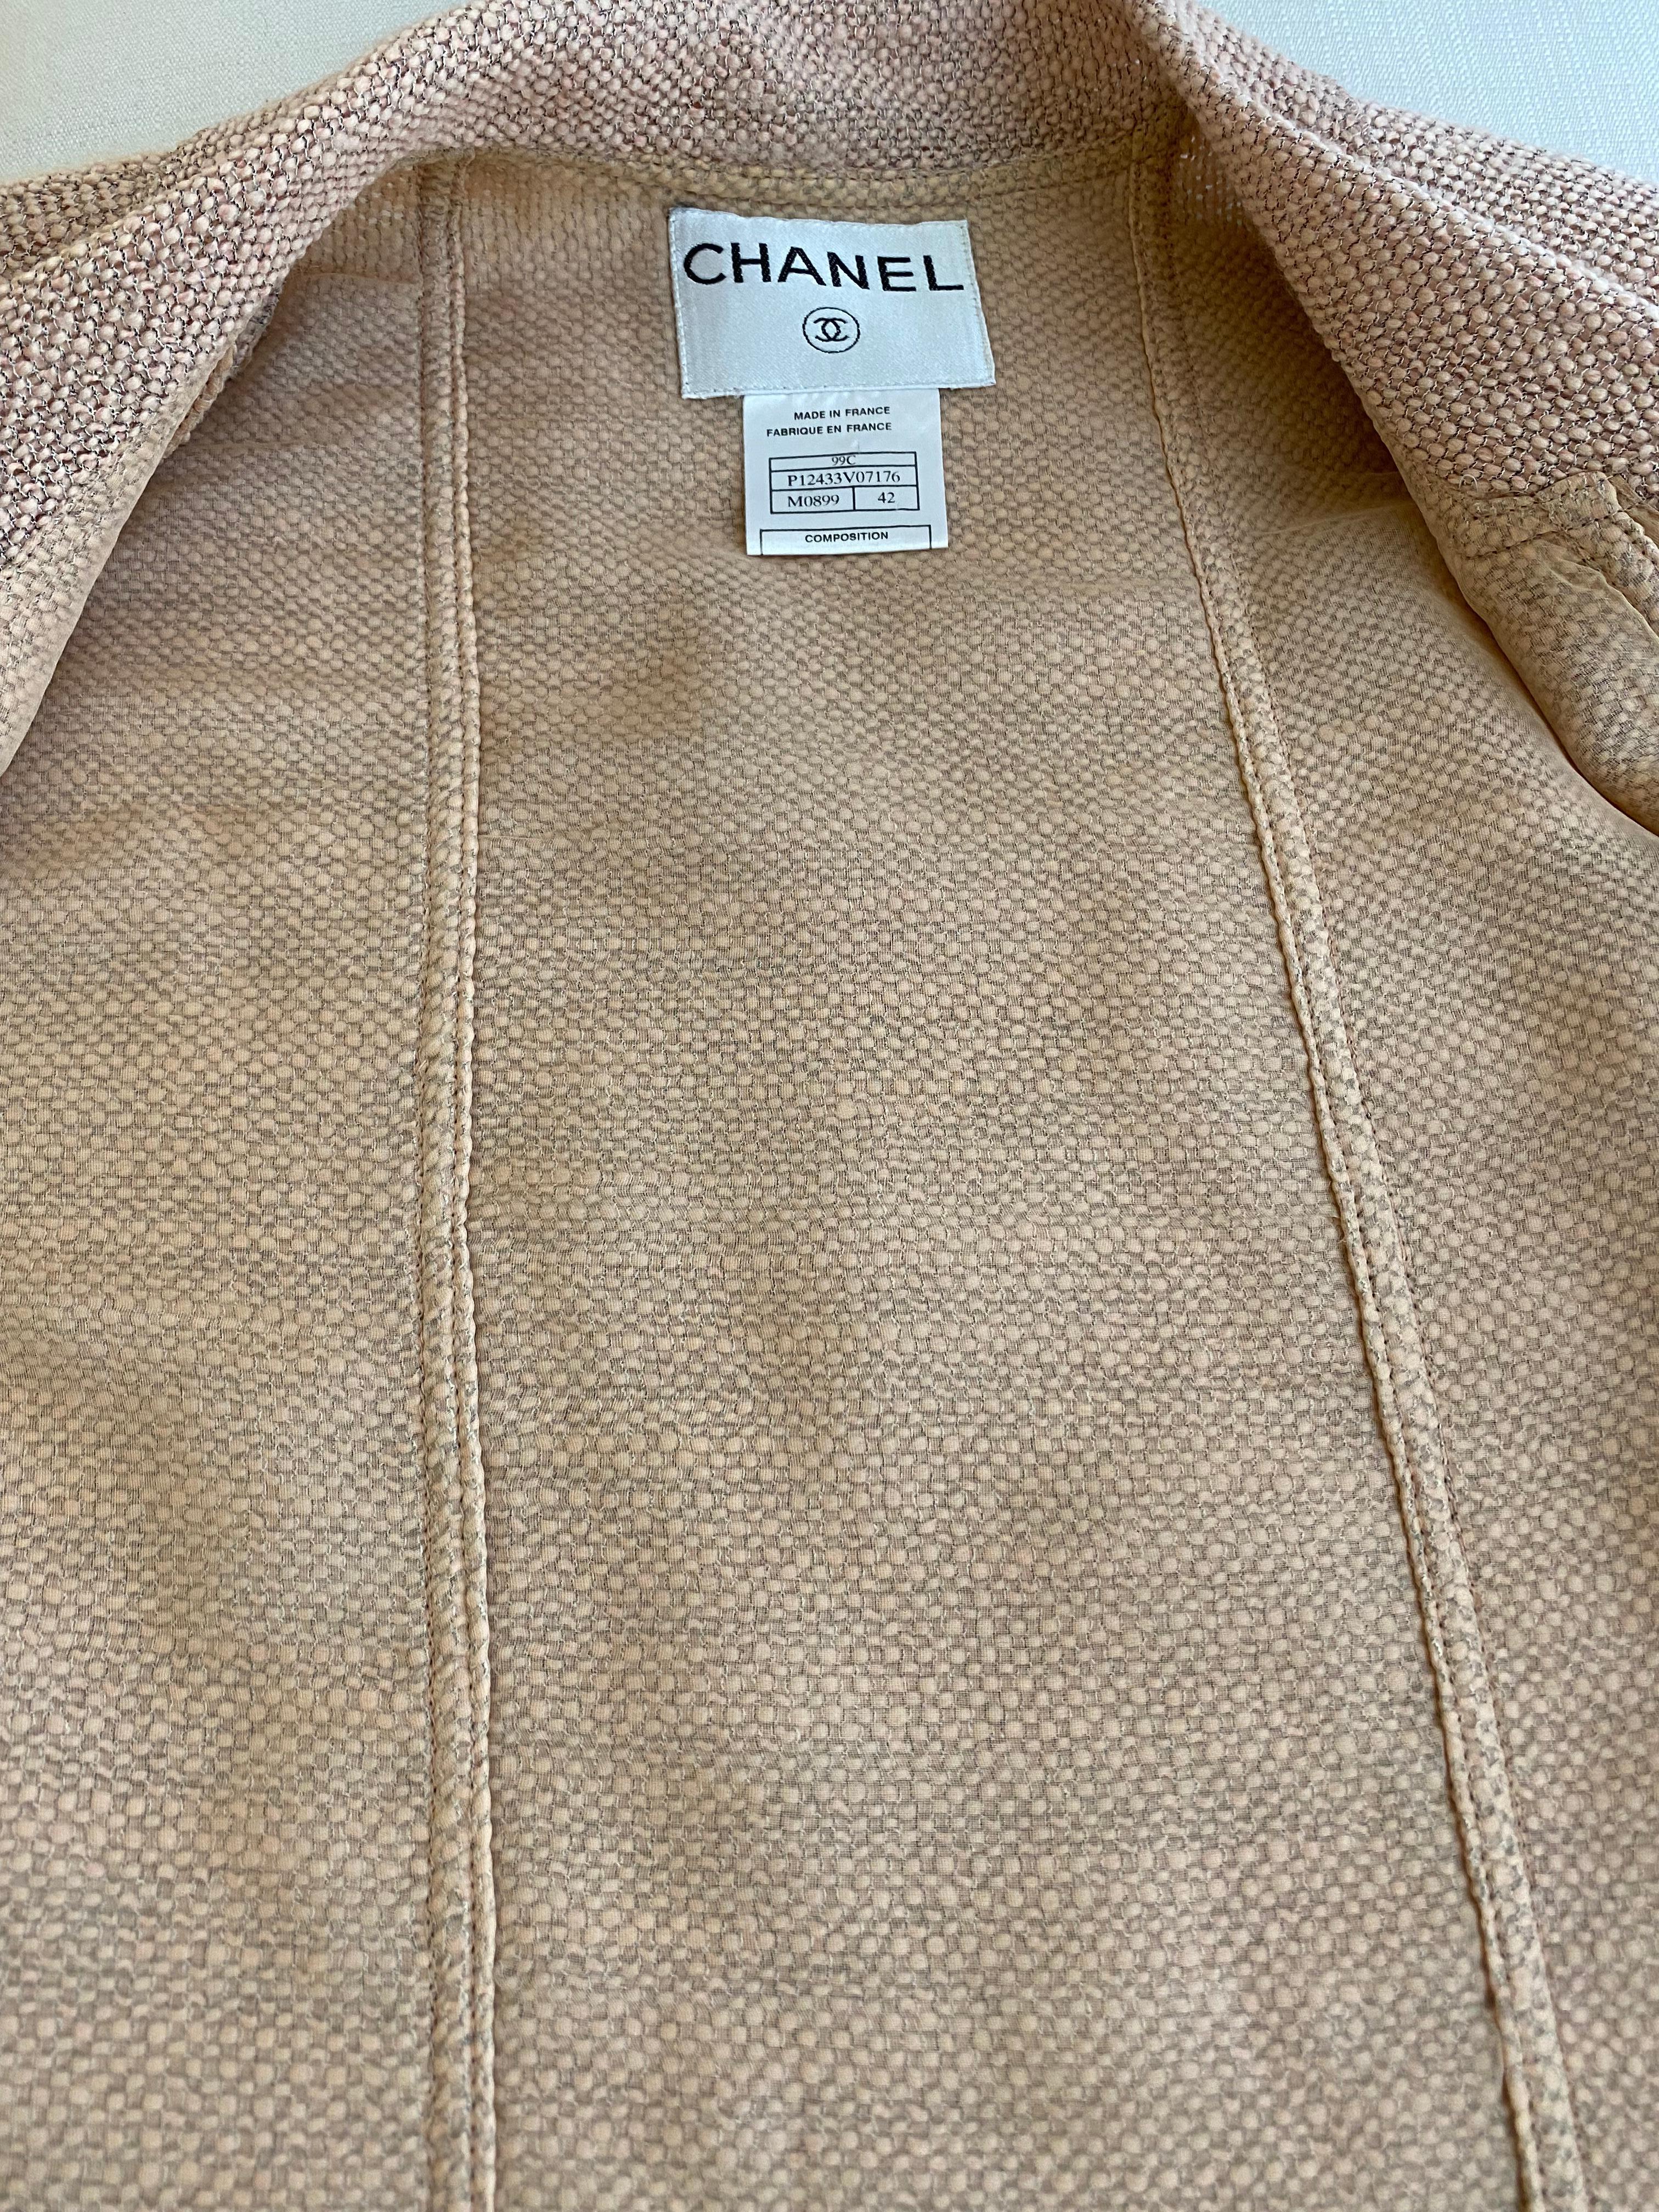 CHANEL, tailleur blazer jupe en laine rose pâle, années 1990 Pour femmes en vente